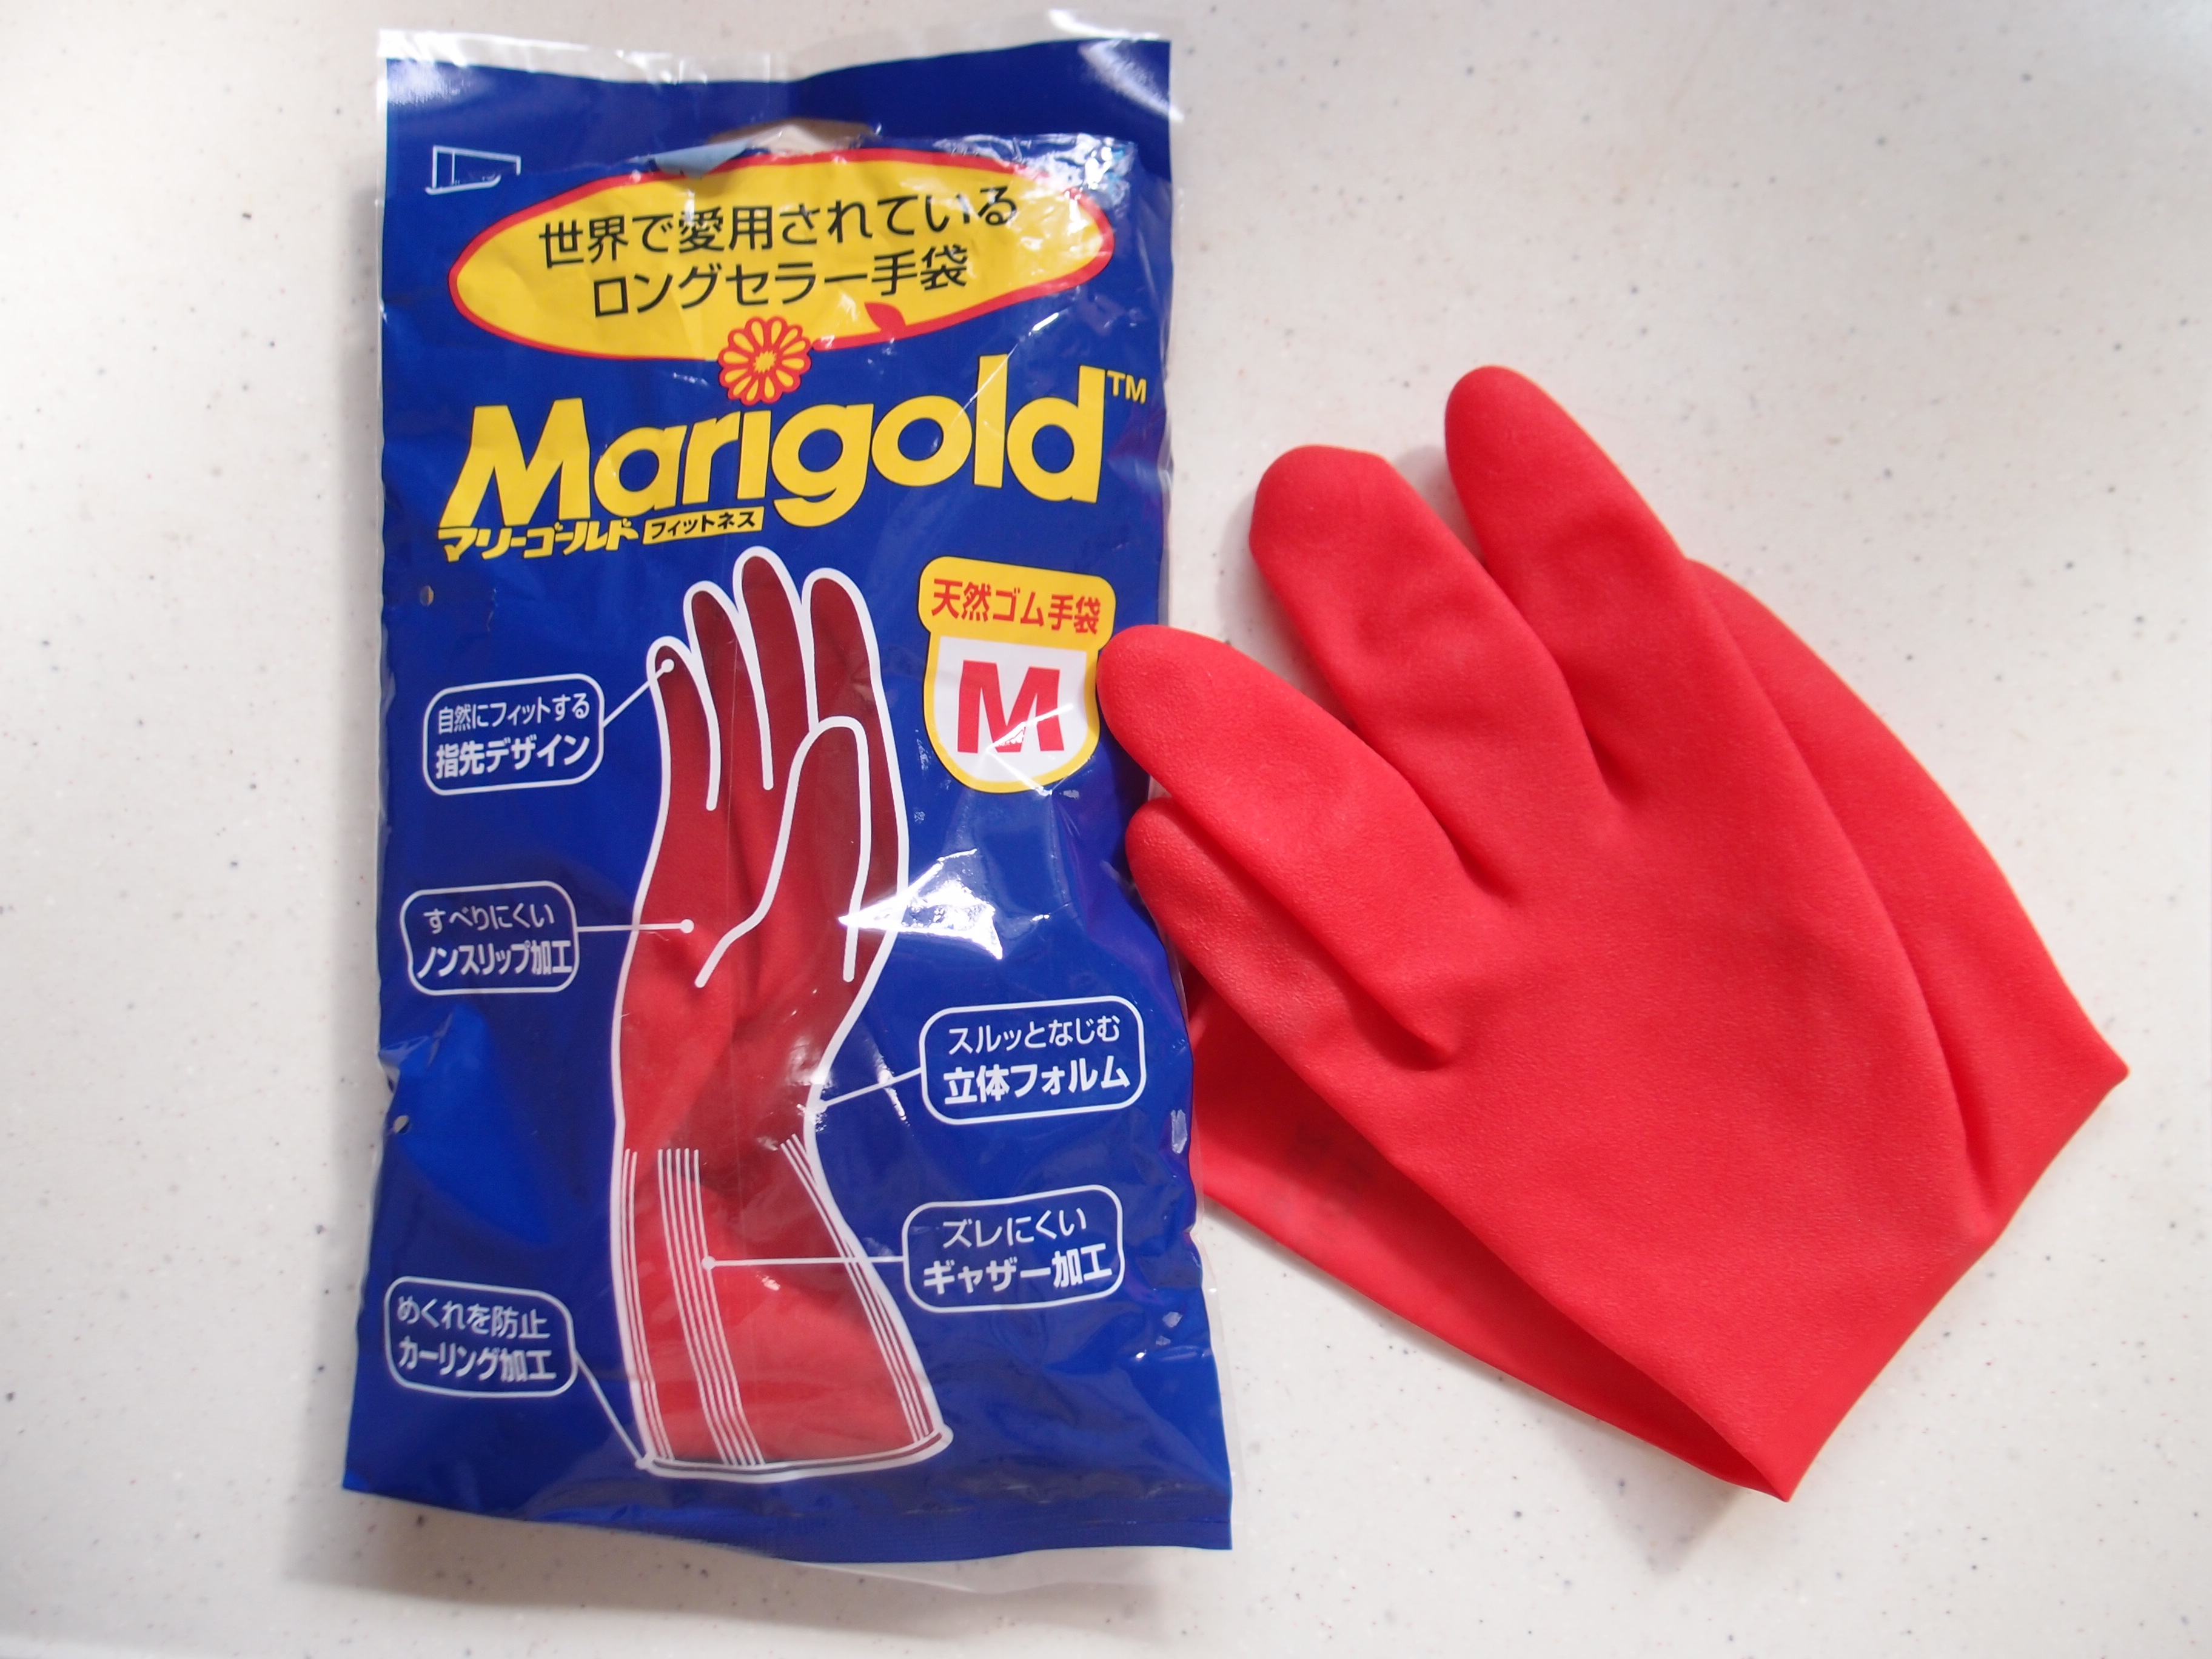 柔らかく手にフィット！真っ赤なゴム手袋「オカモト マリーゴールド」をリピート買いし続ける理由 | ポジポス